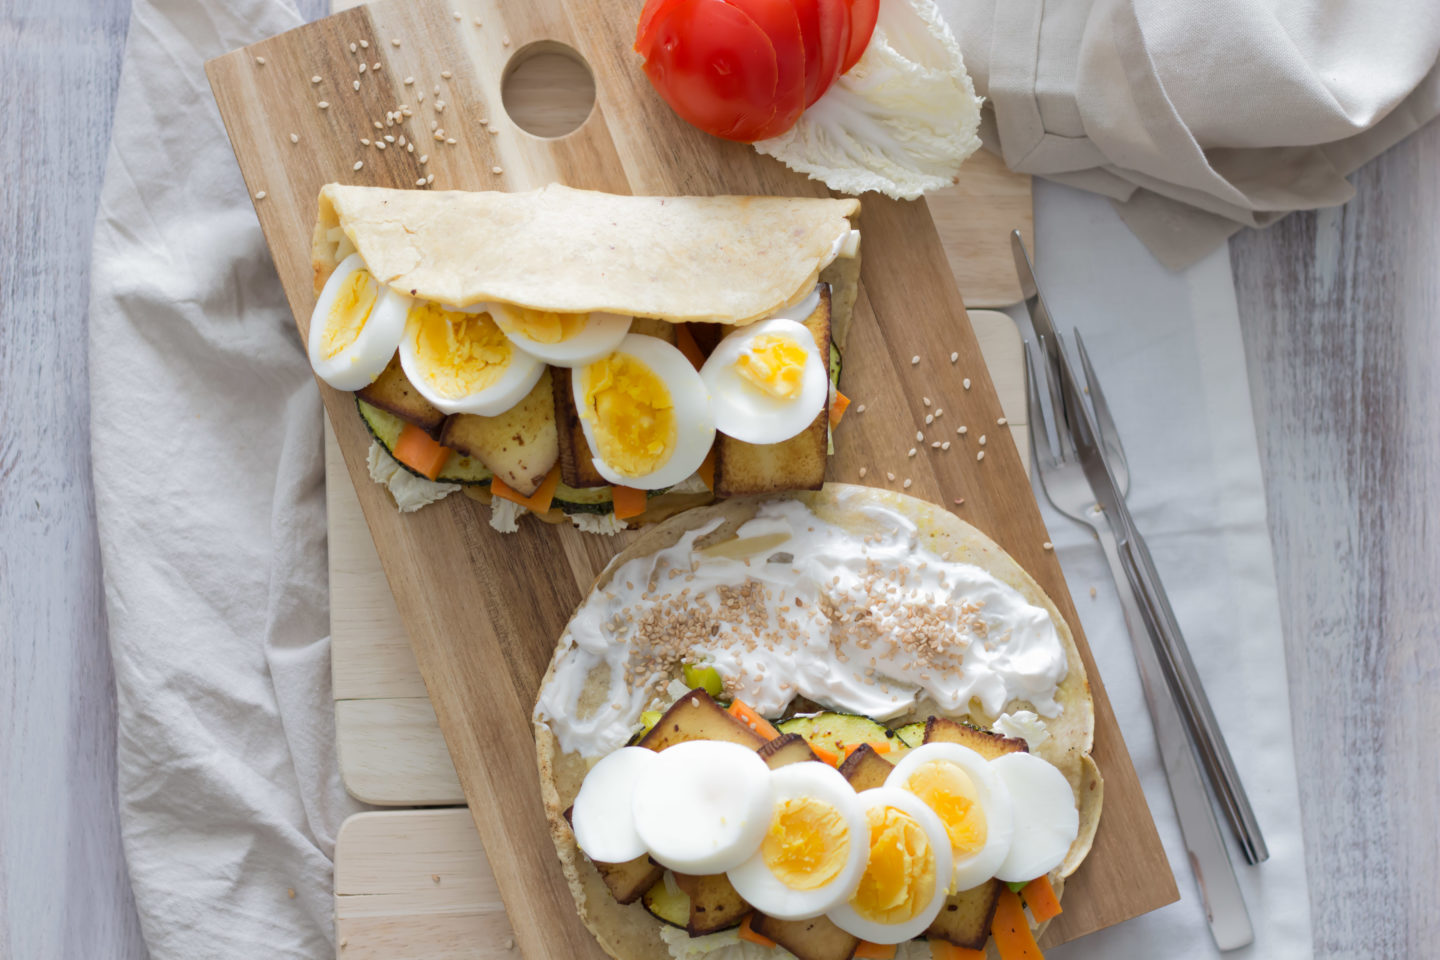 Veganes Omelette mit geröstetem Zucchinigemüse für deinen Osterbrunch! Wer mag kann gerne eine Veggie Variante mit Ei daraus machen...